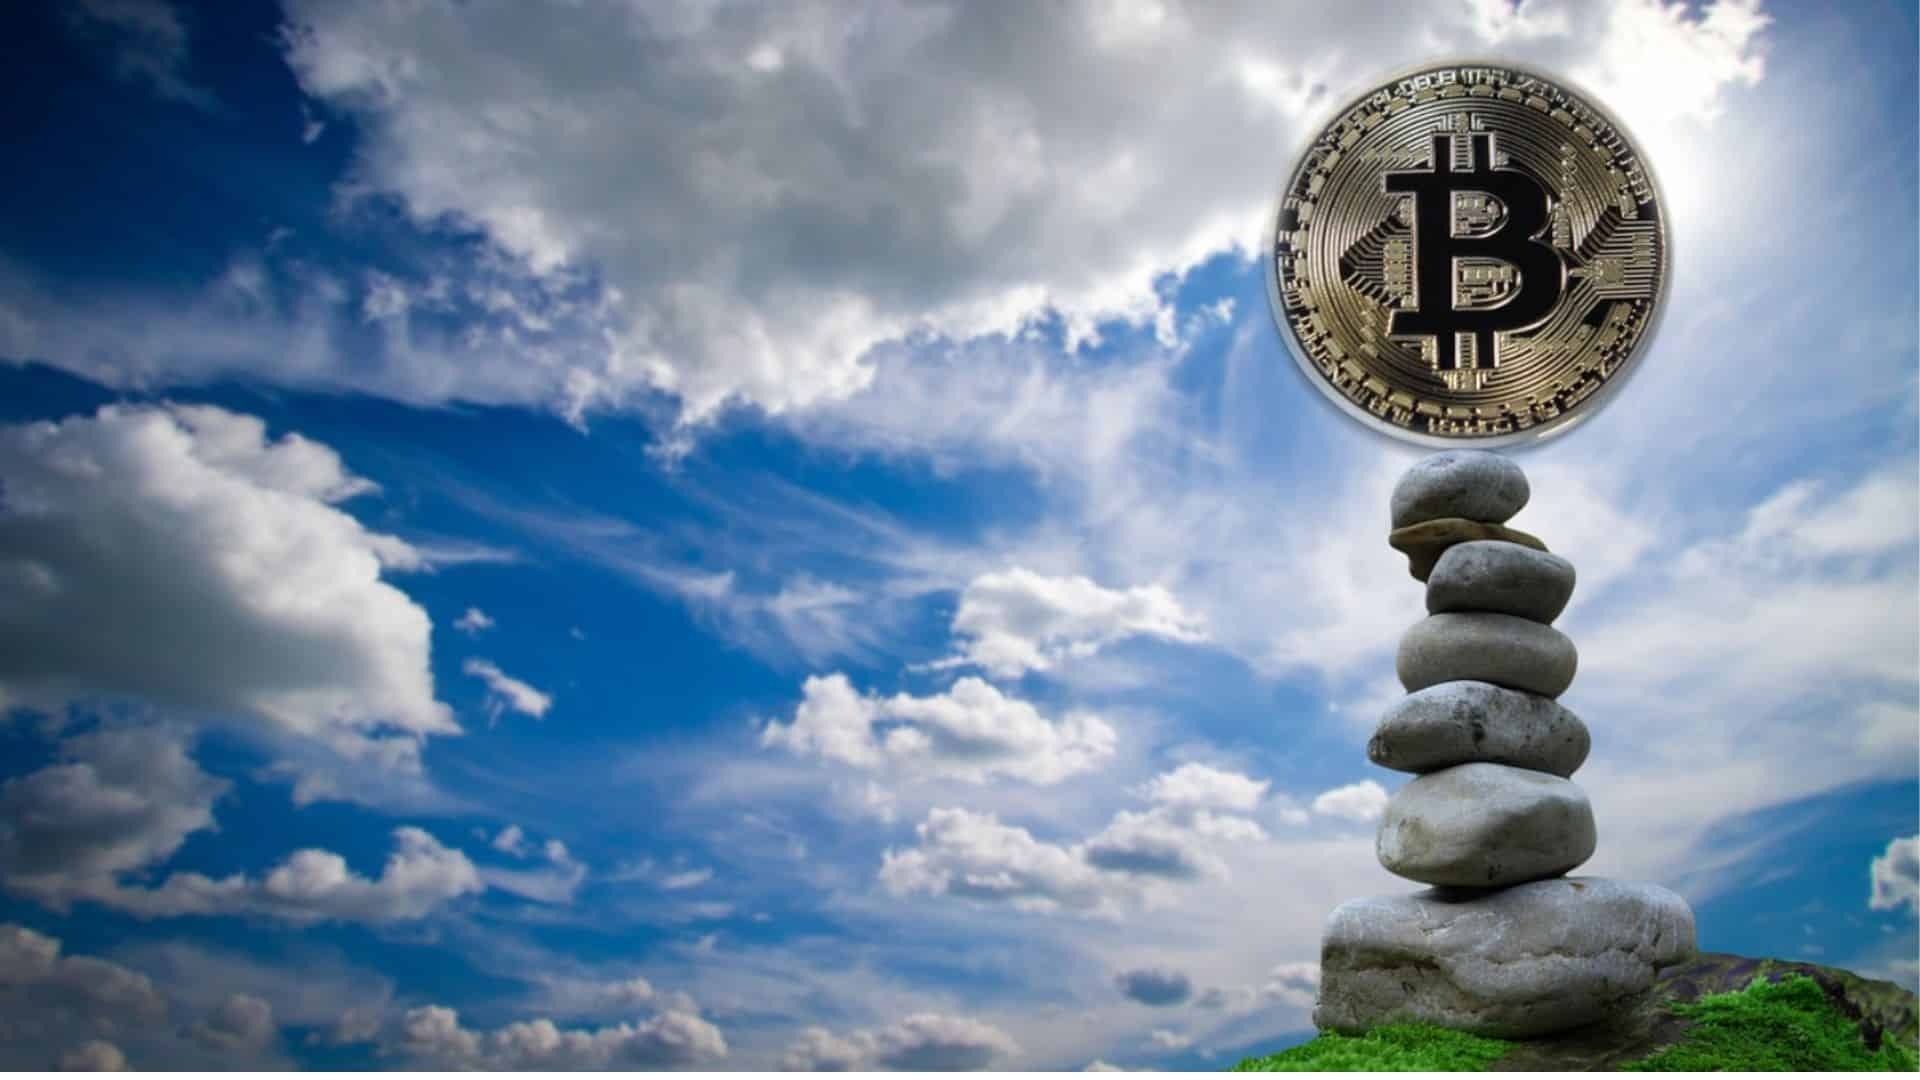 Bitcoin treidaus – Mitä treidaajien tulee tietää juuri nyt